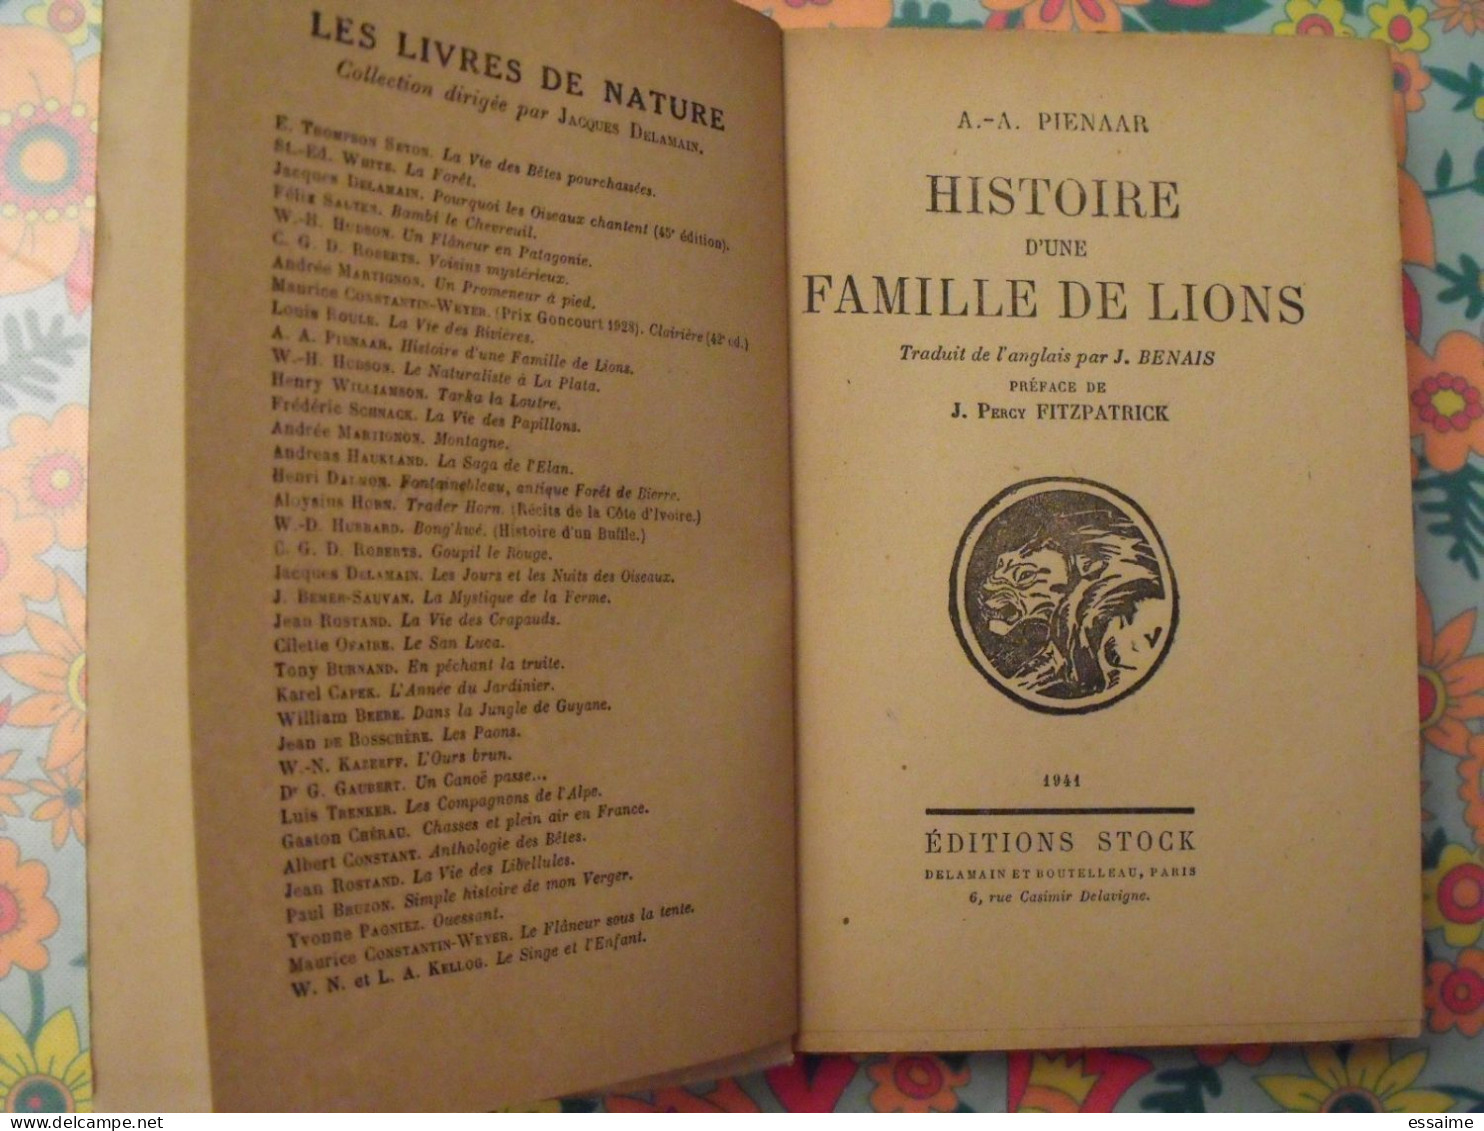 Histoire D'une Famille De Lions. Pienaar. Stock 1941. Delamain. Fitzpatrick - Abenteuer